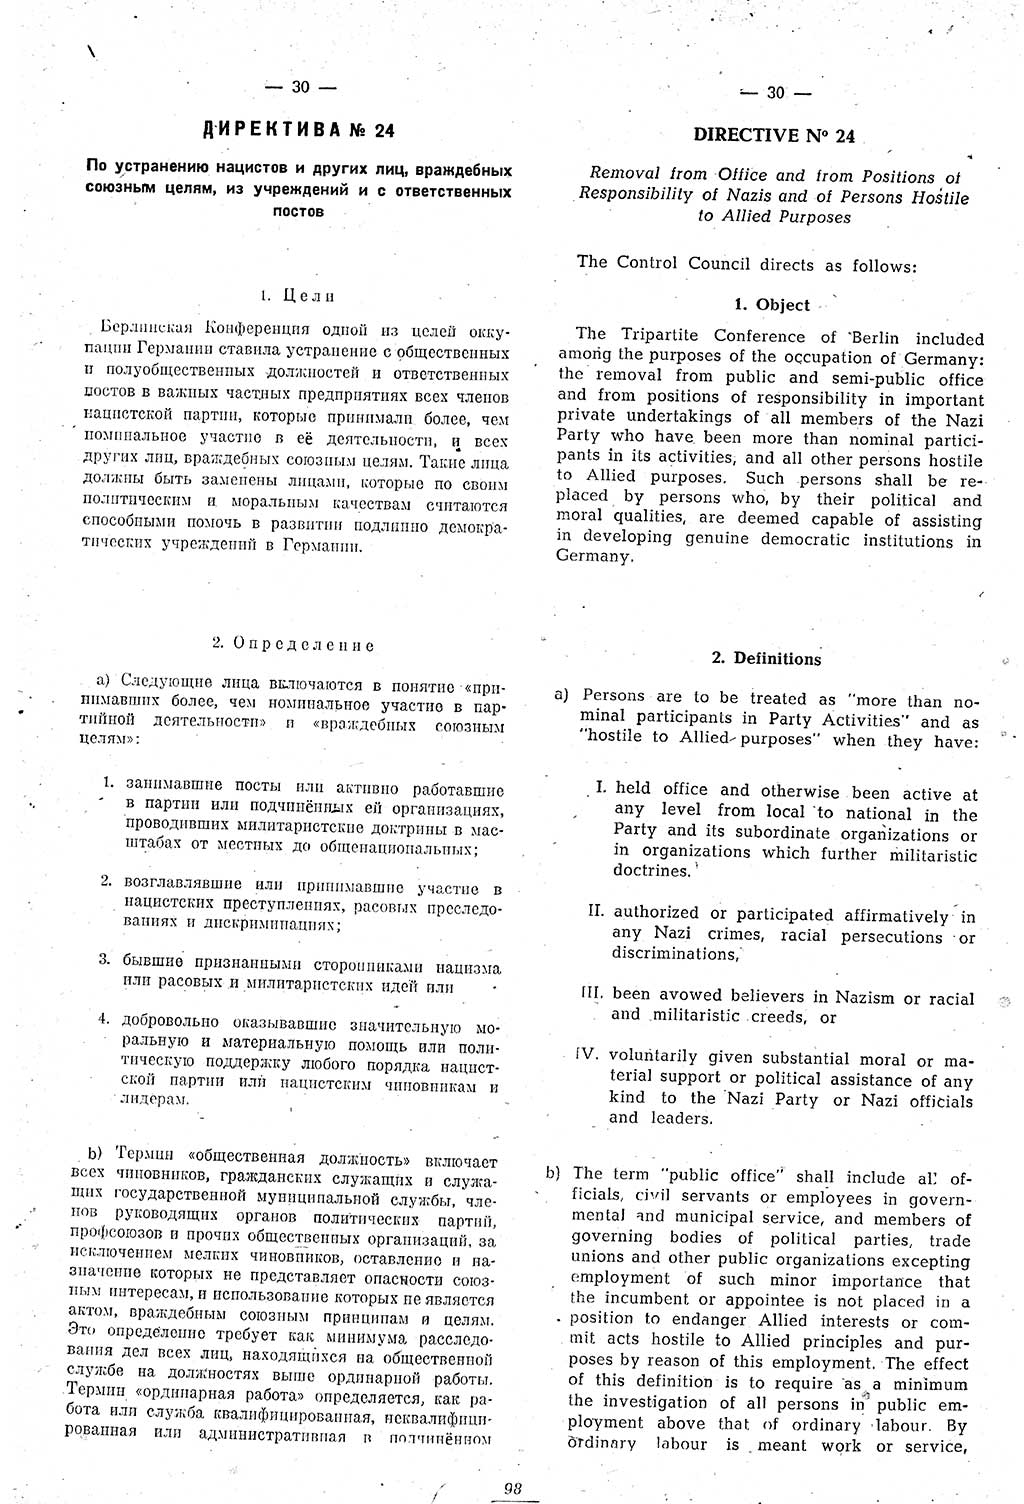 Amtsblatt des Kontrollrats (ABlKR) in Deutschland 1946, Seite 98/1 (ABlKR Dtl. 1946, S. 98/1)